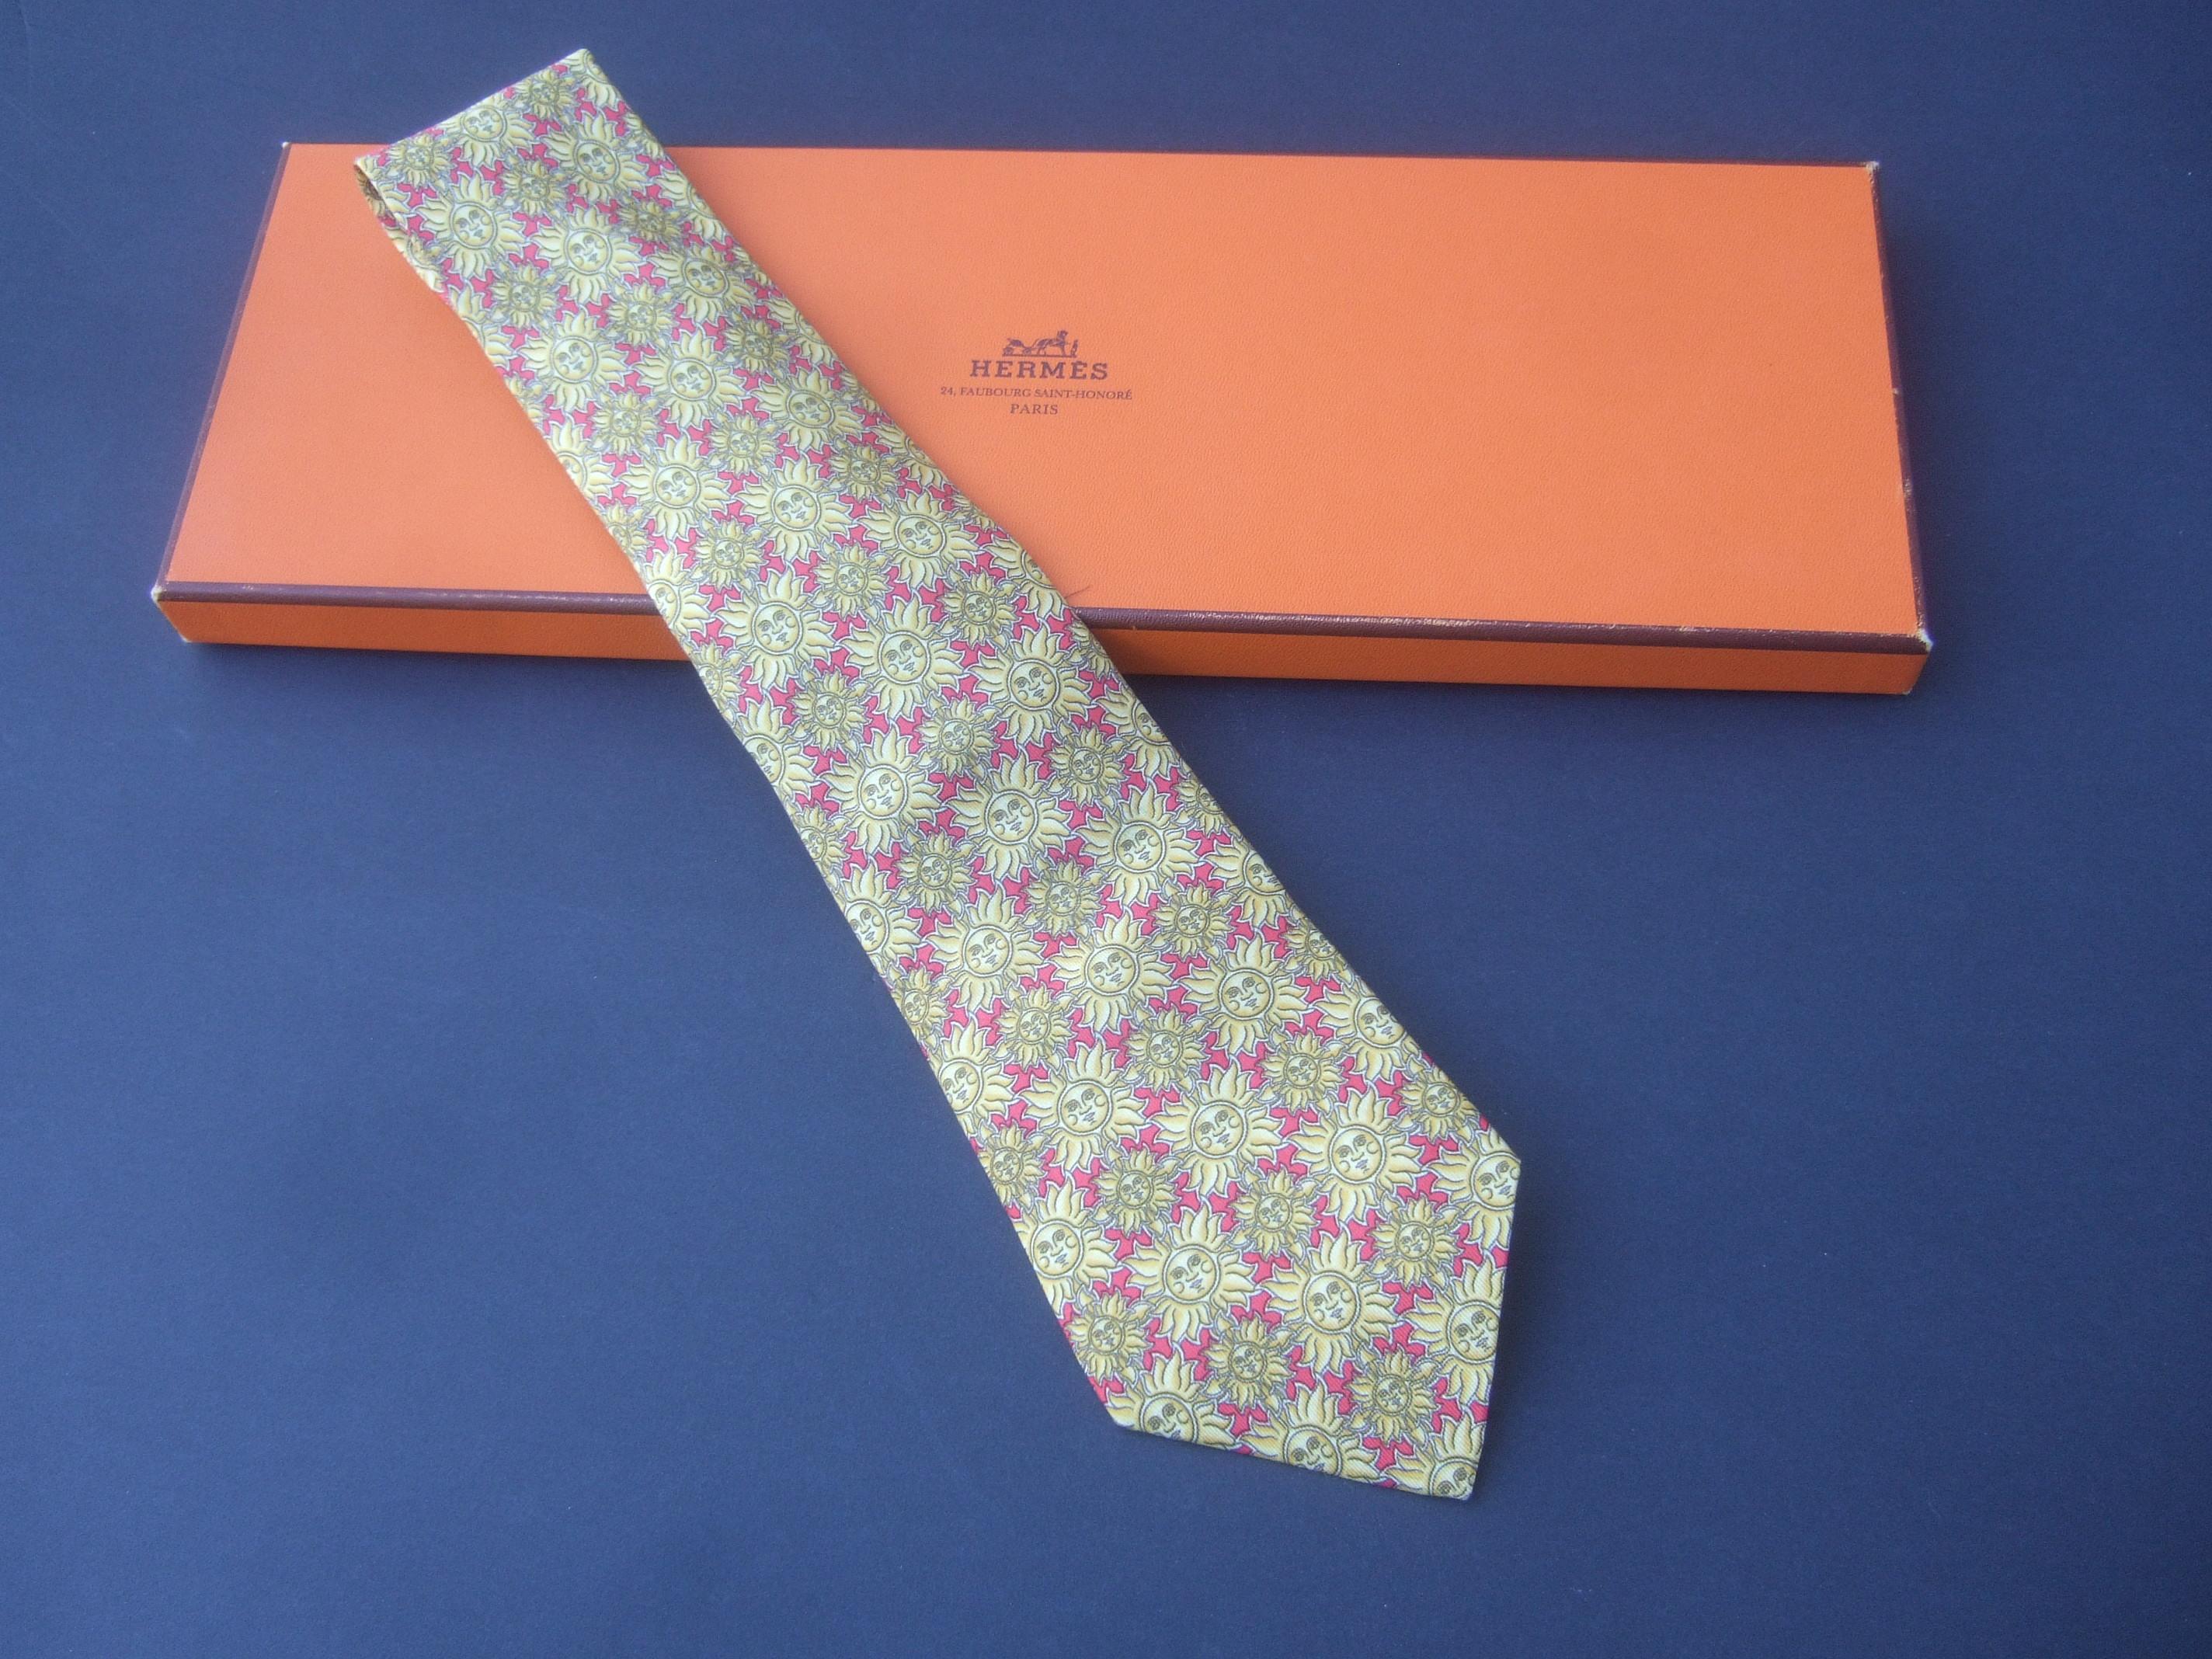 Hermès Paris - Cravate en soie imprimée soleil doré dans une boîte Hermès, circa 1990 3